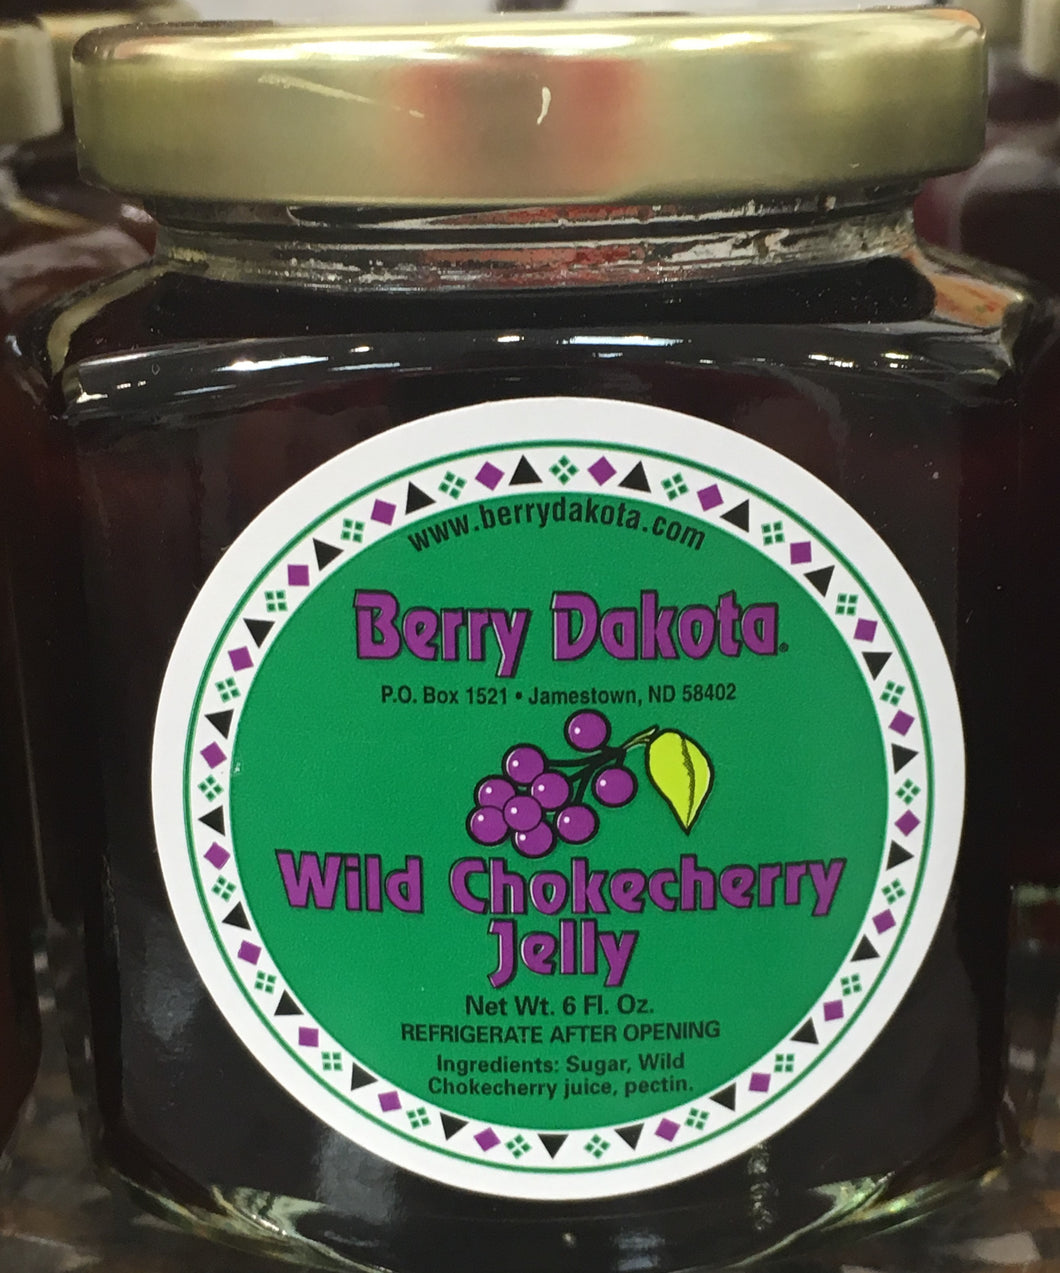 Berry Dakota Wild Chokecherry Jelly